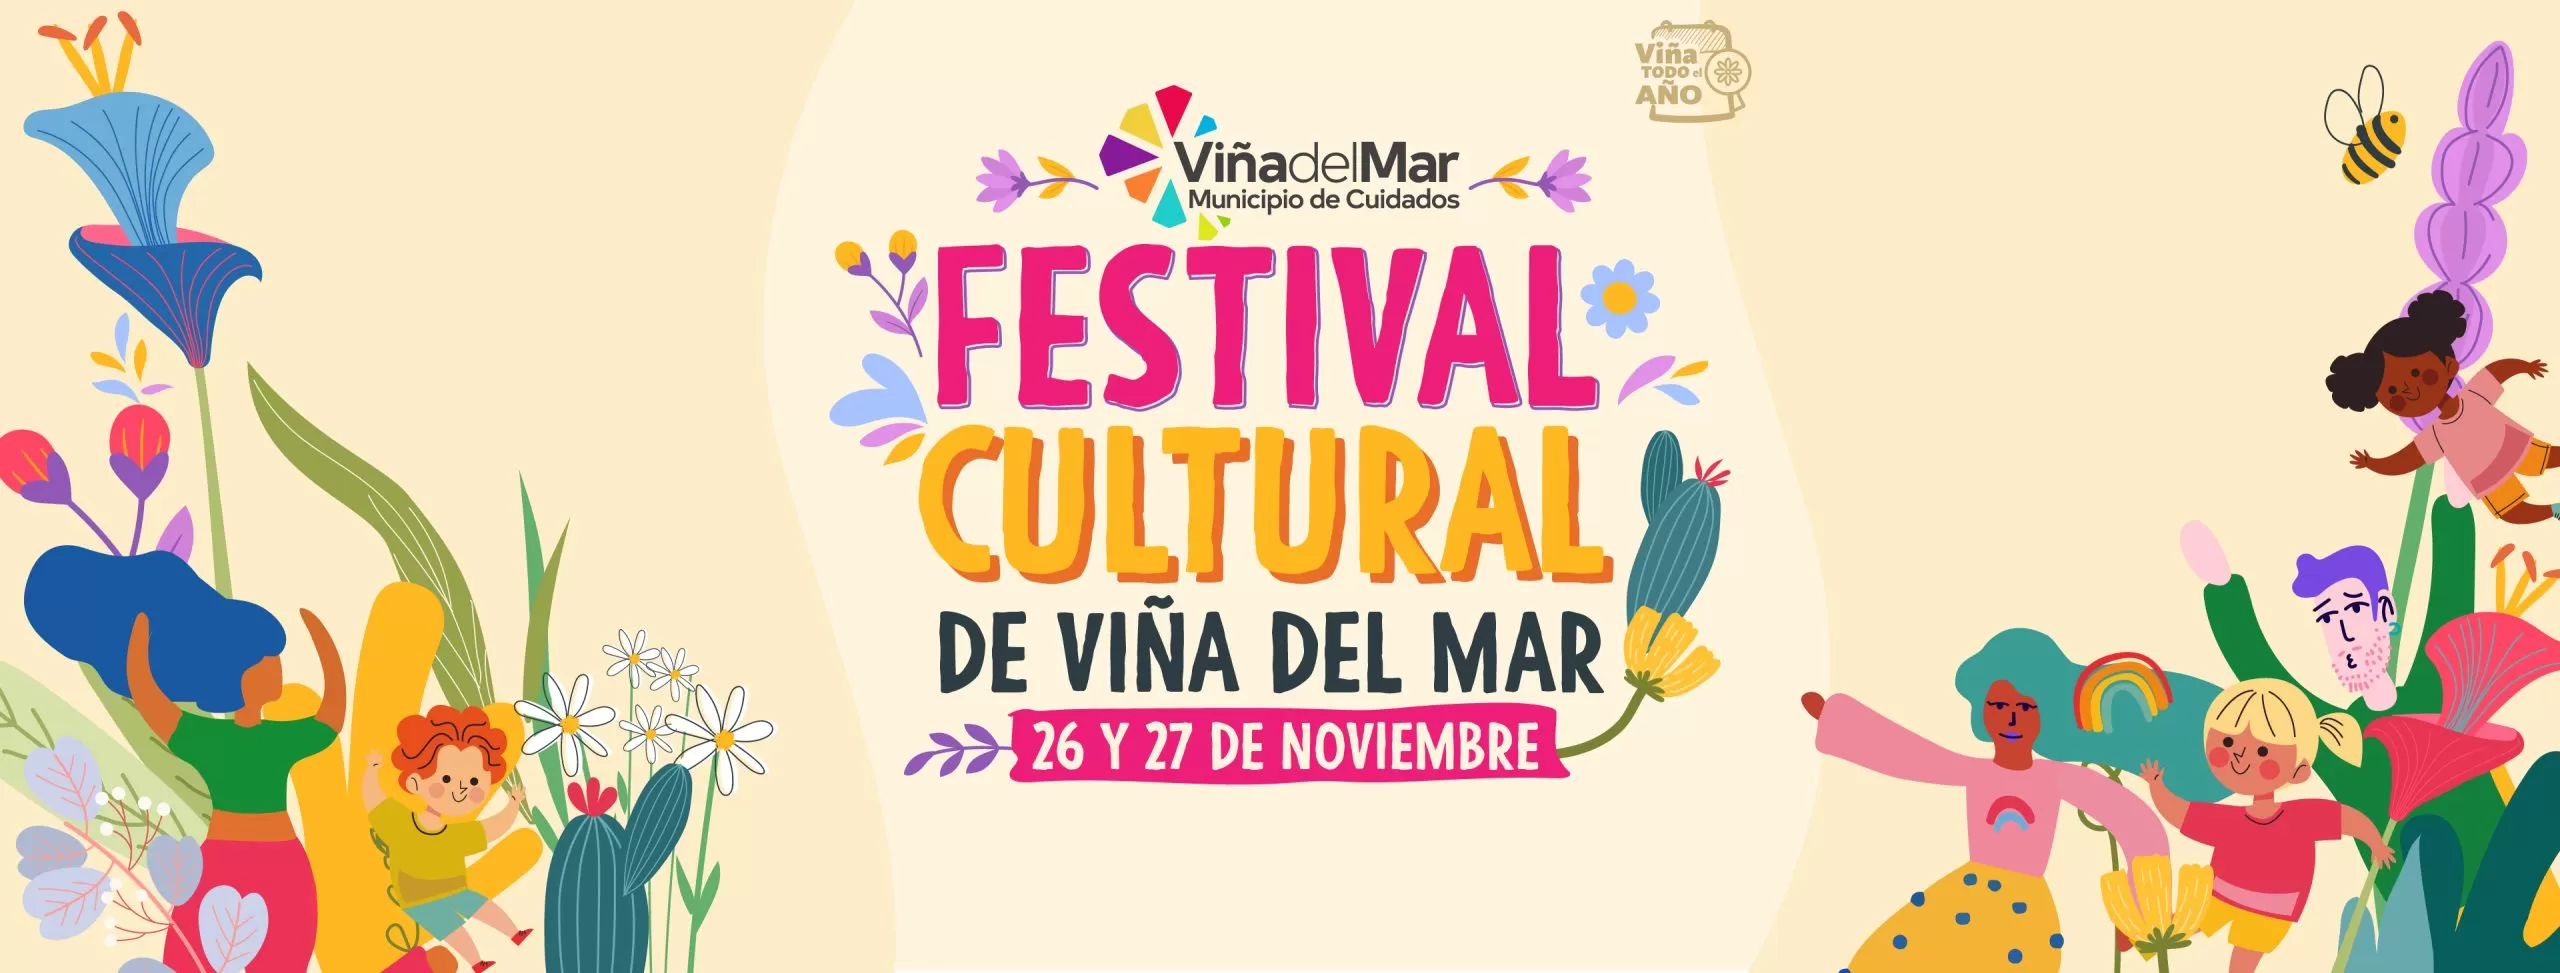 Festival Cultural de Vina del Mar 1 scaled 1